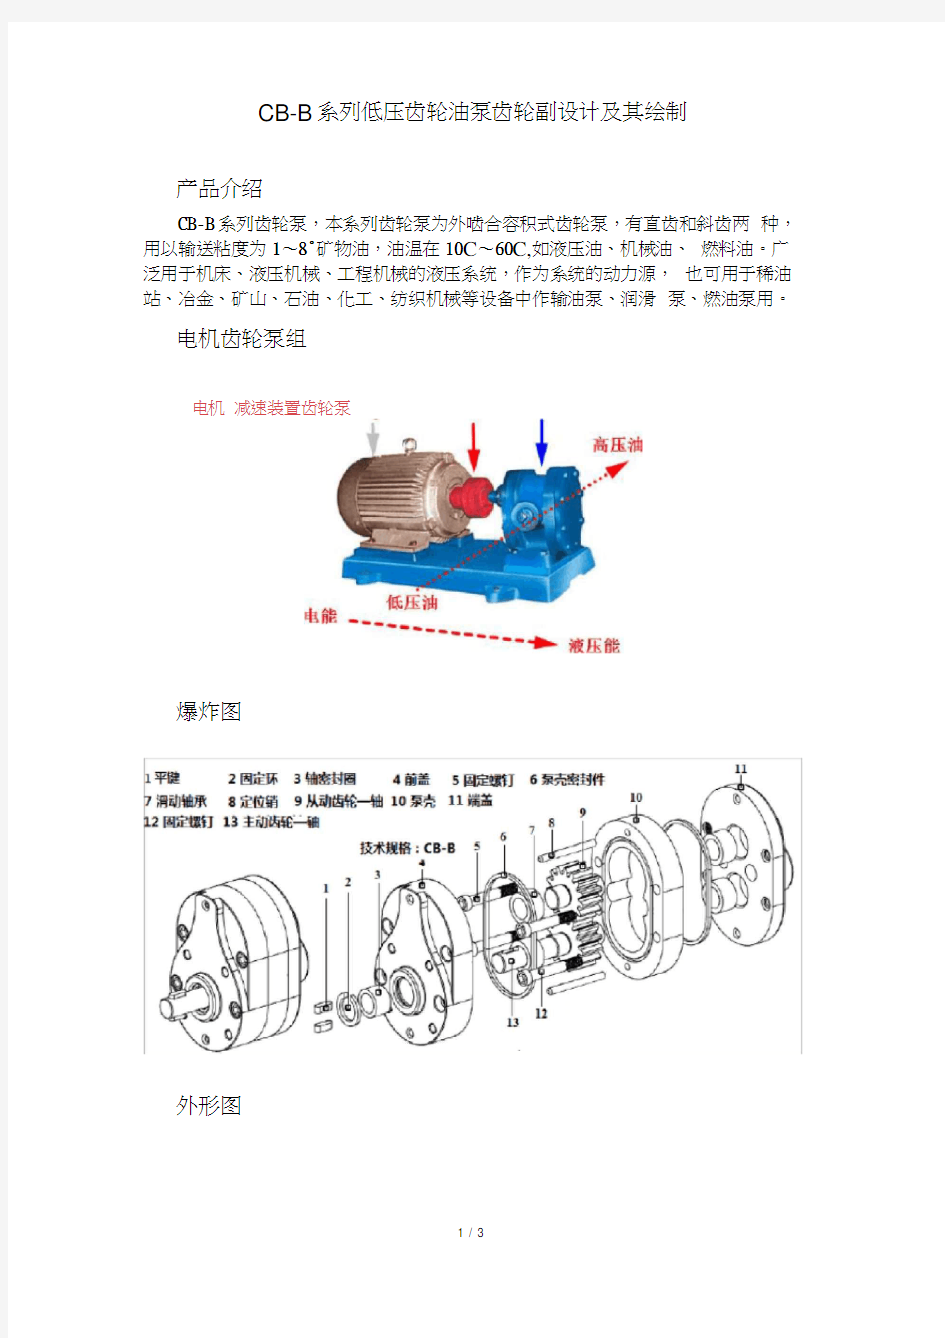 CB-B系列低压齿轮泵